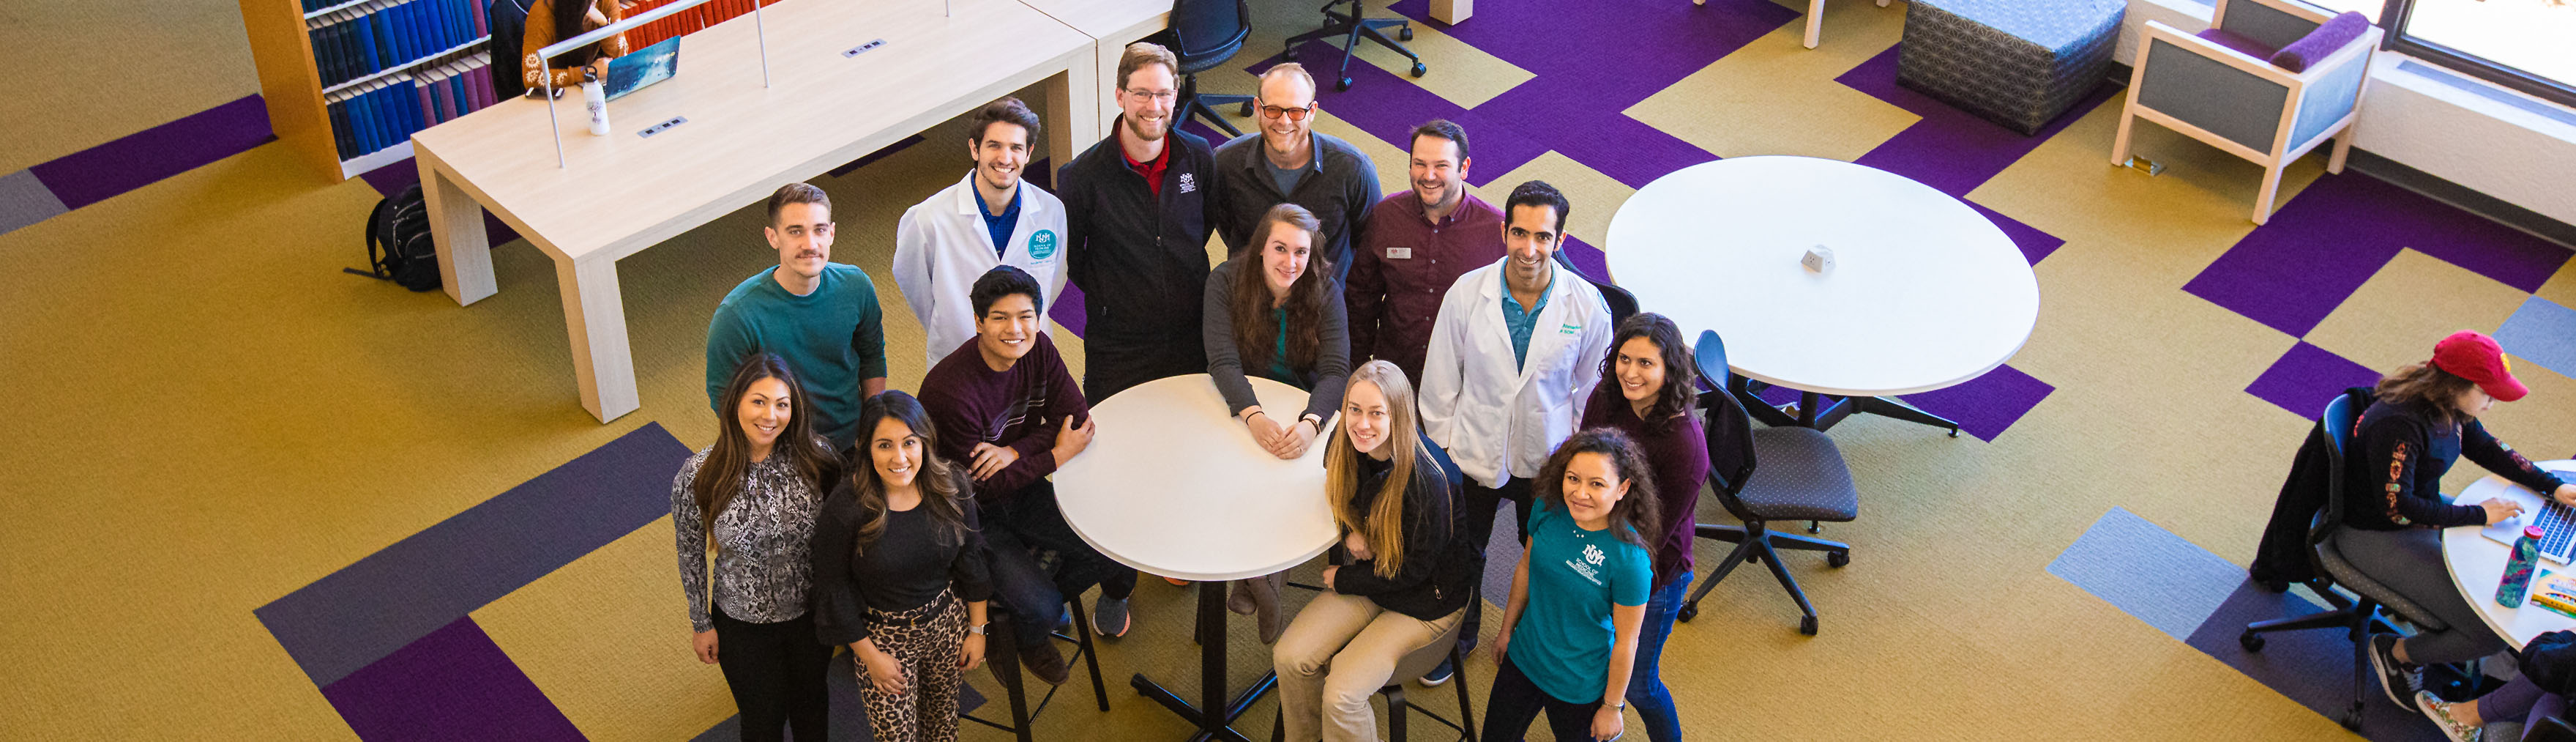 Estudantes de muitos dos programas educacionais da Faculdade de Medicina da UNM se reúnem para uma foto na Biblioteca de Ciências da Saúde